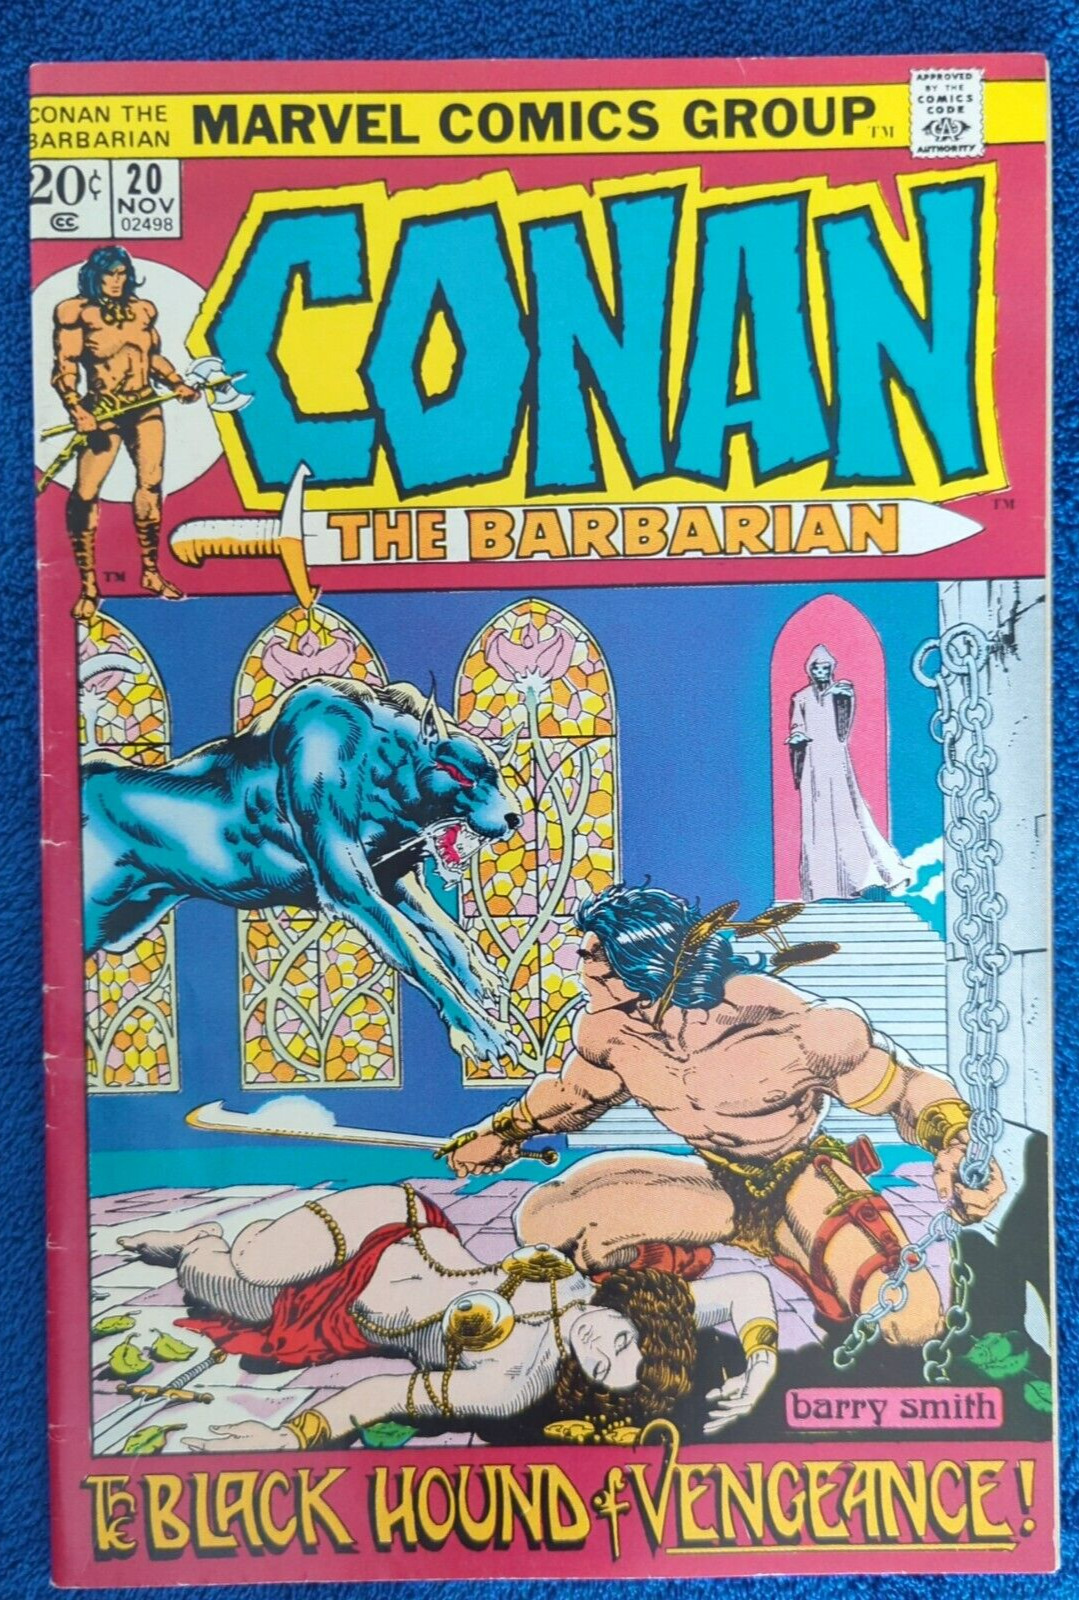 CONAN THE BARBARIAN #20 1972, MARVEL. VERY EARLY CONAN STORY 7.5 VERY FINE-